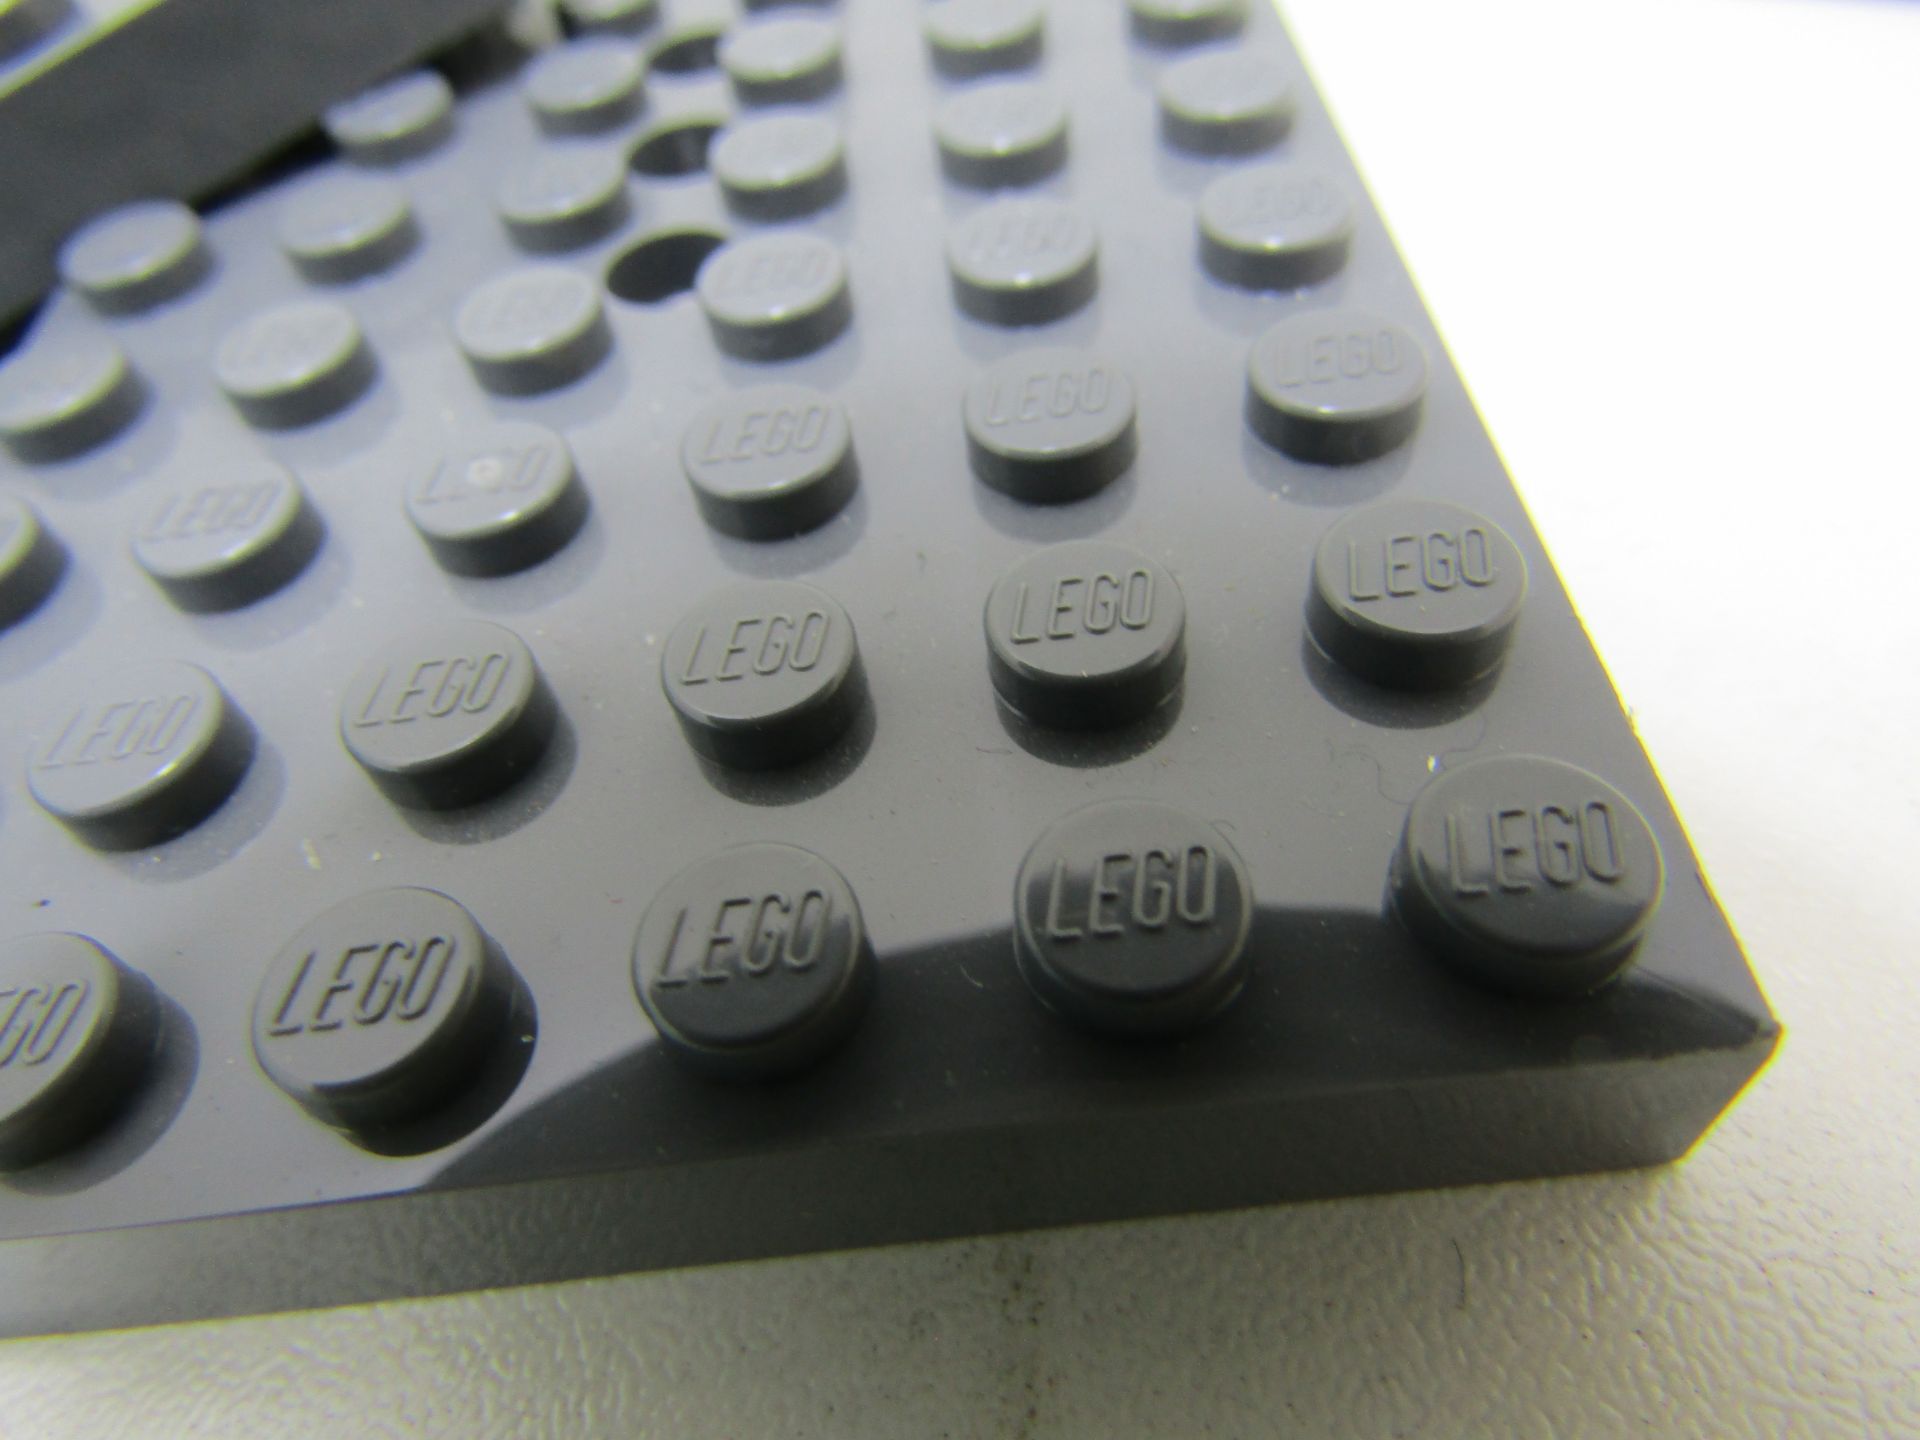 17 x LEGO Base plates. - Image 3 of 3